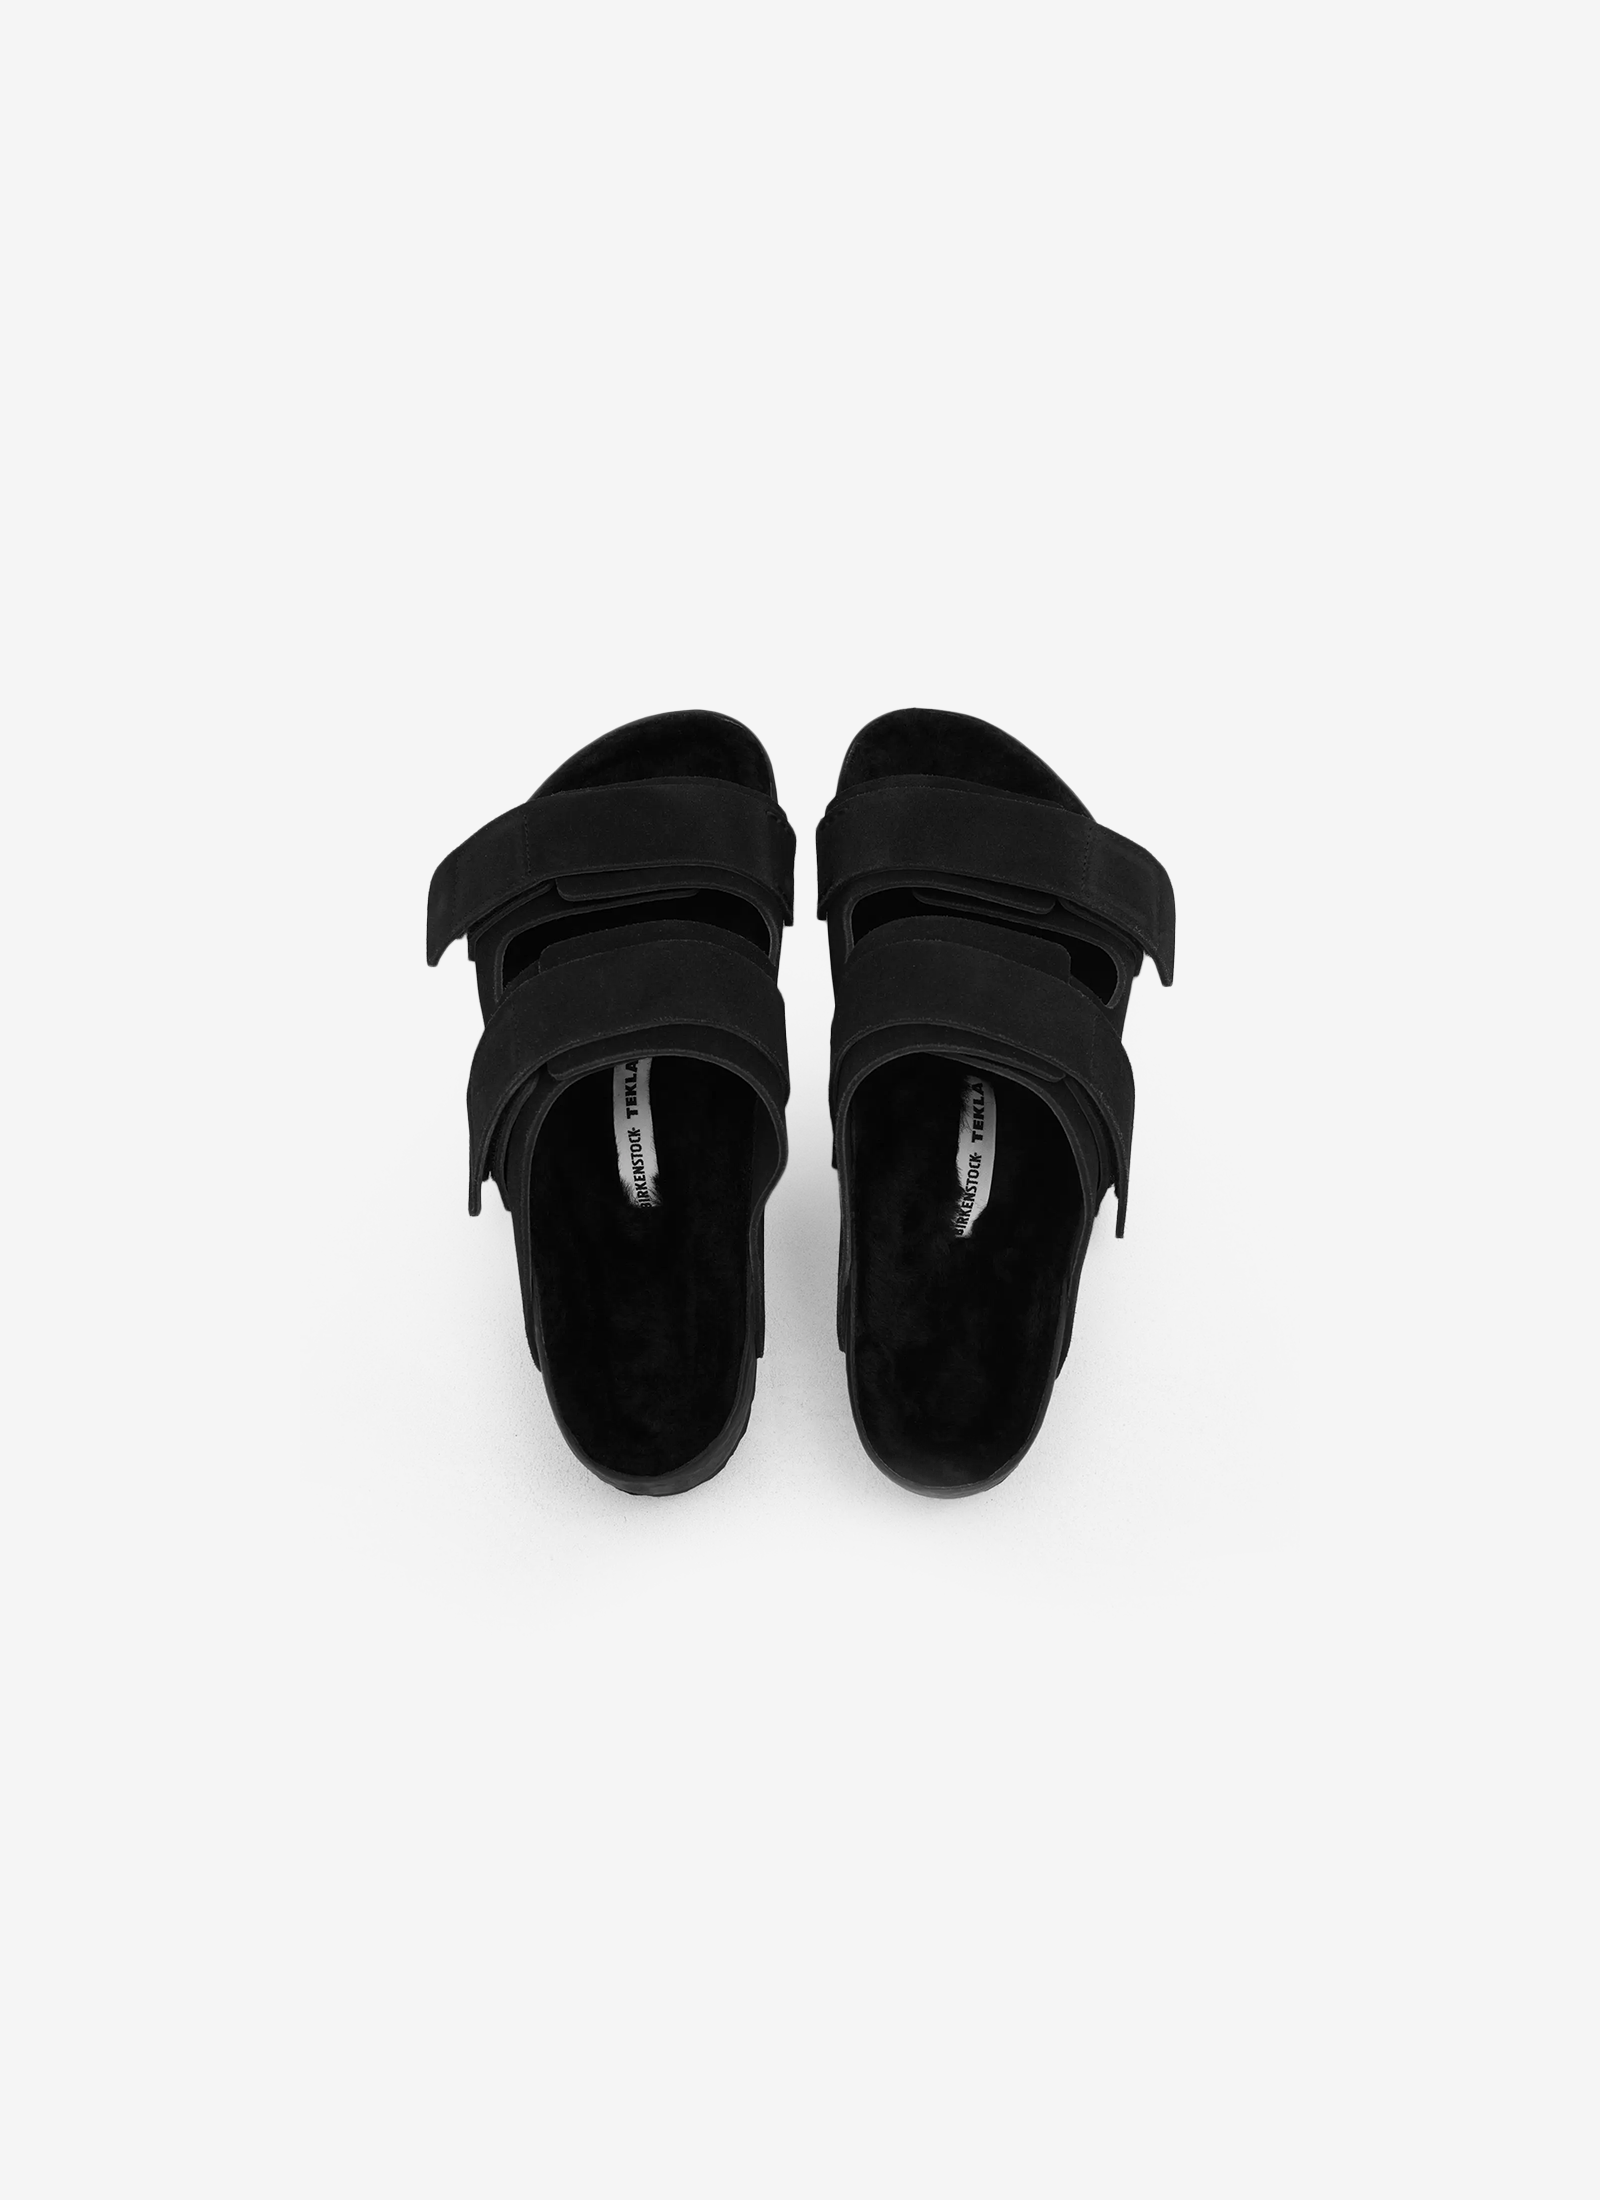 Tekla x Birkenstock - Uji Shoes in Slate